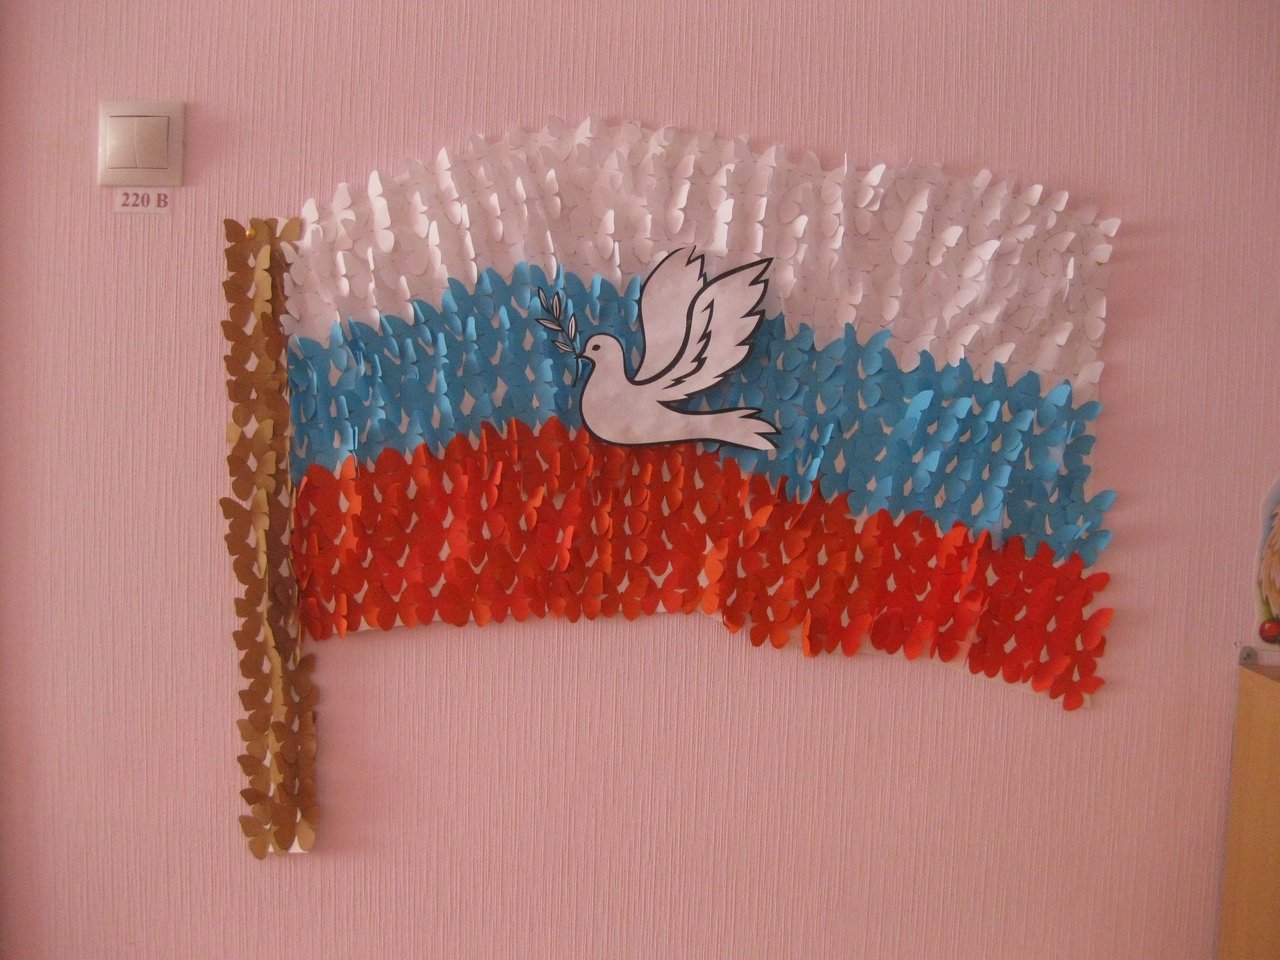 Поделка российский флаг в детском саду